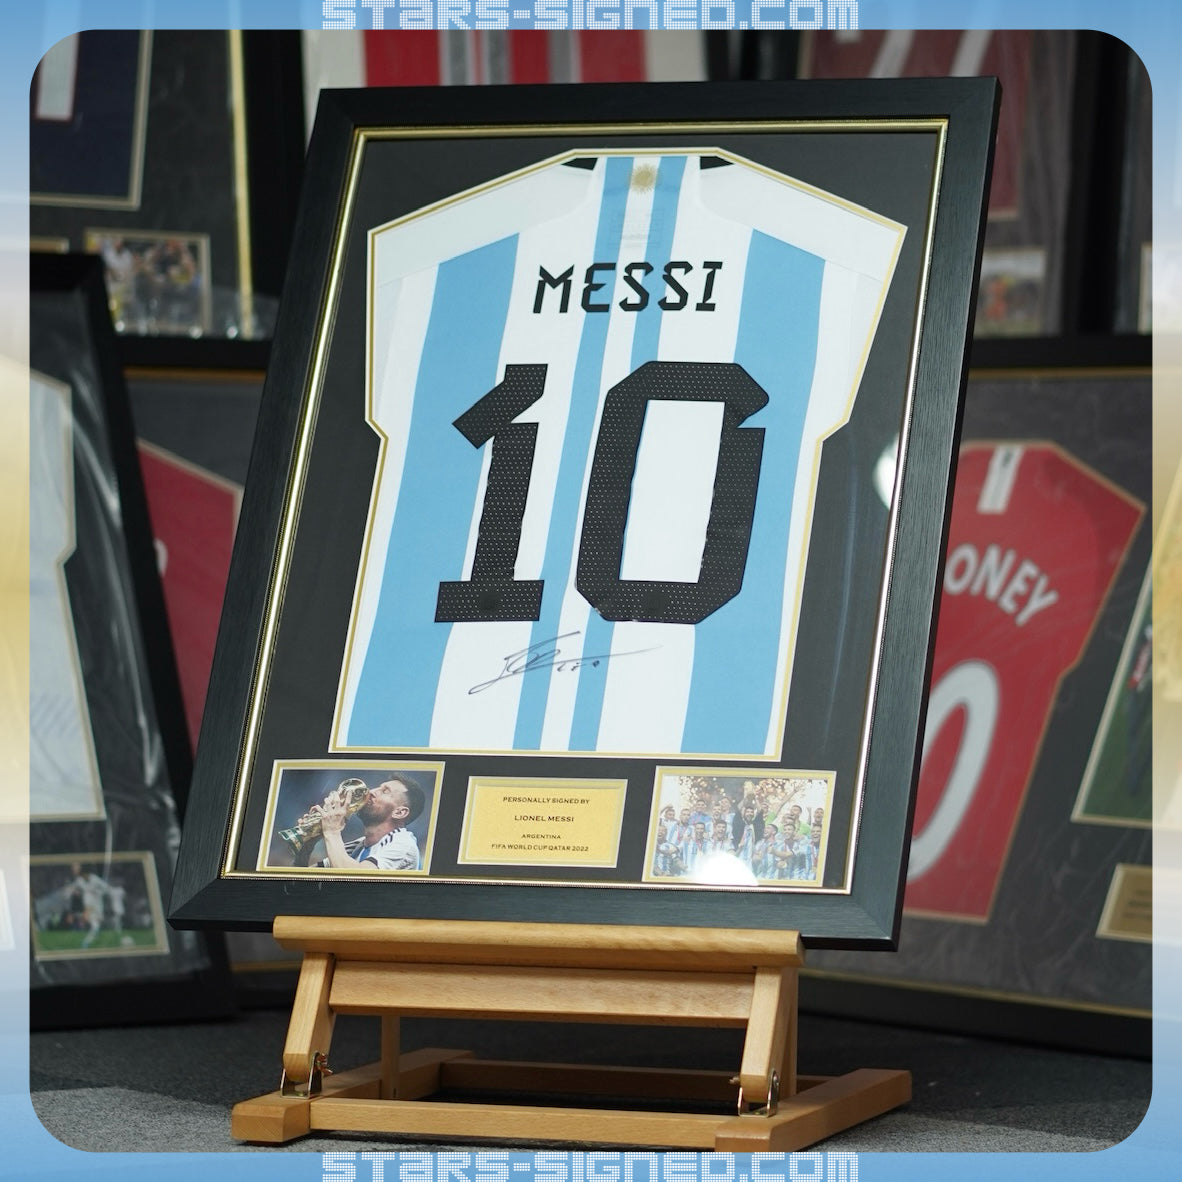 美斯 Lionel Messi 阿根廷2022兩星版本主場球衣金線條外框(背簽)